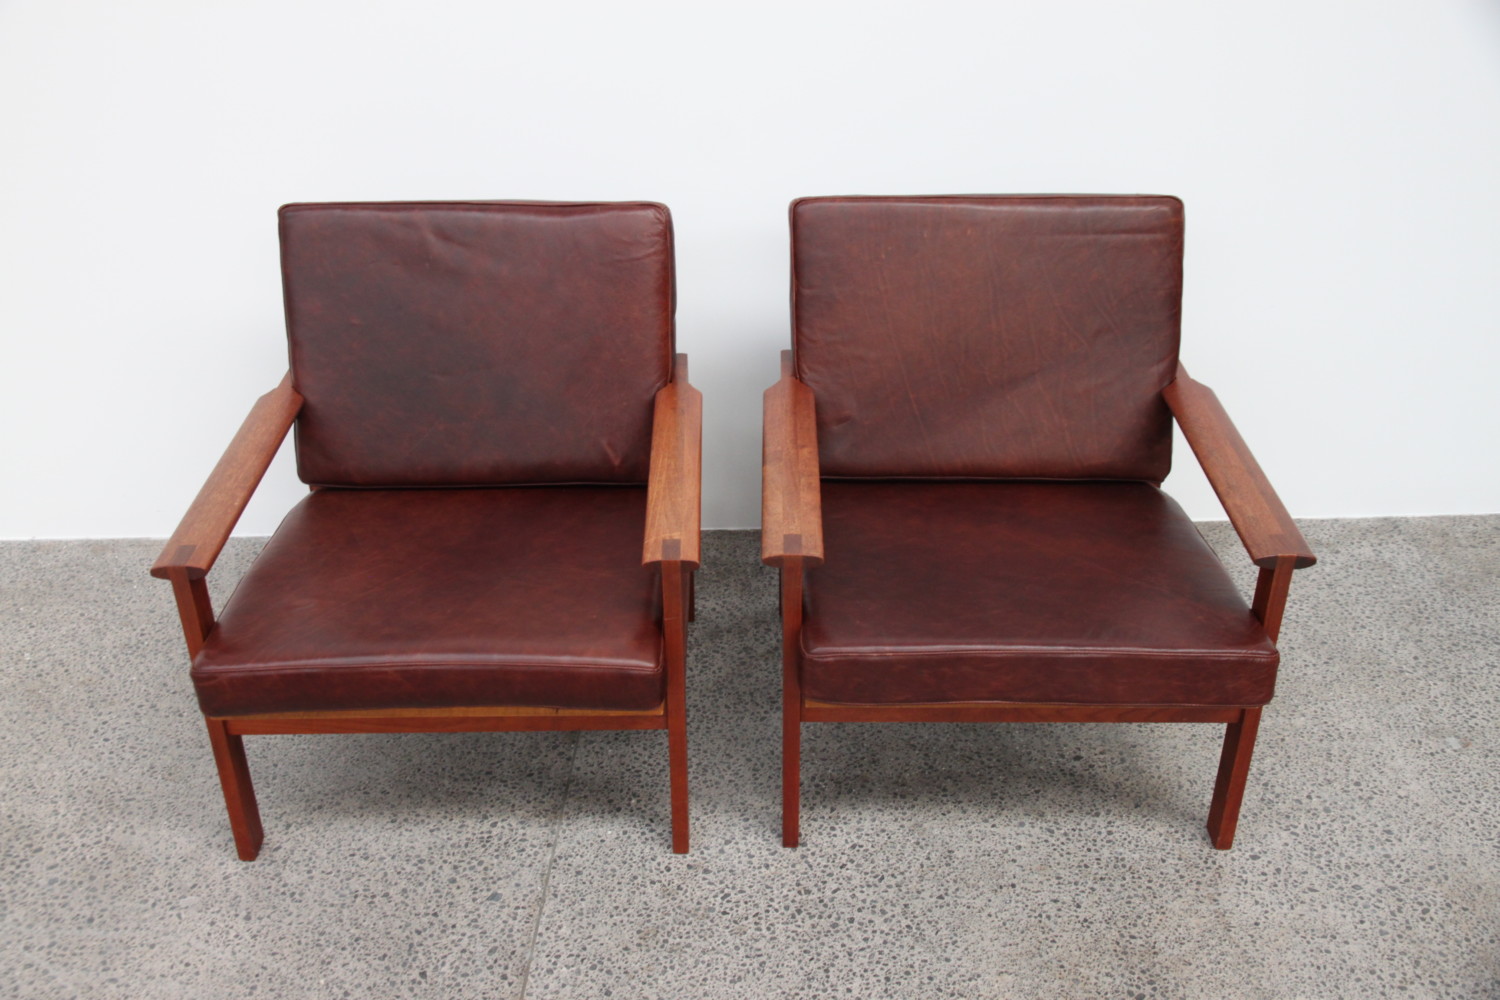 Illum Wikkelso Teak & Leather Armchairs